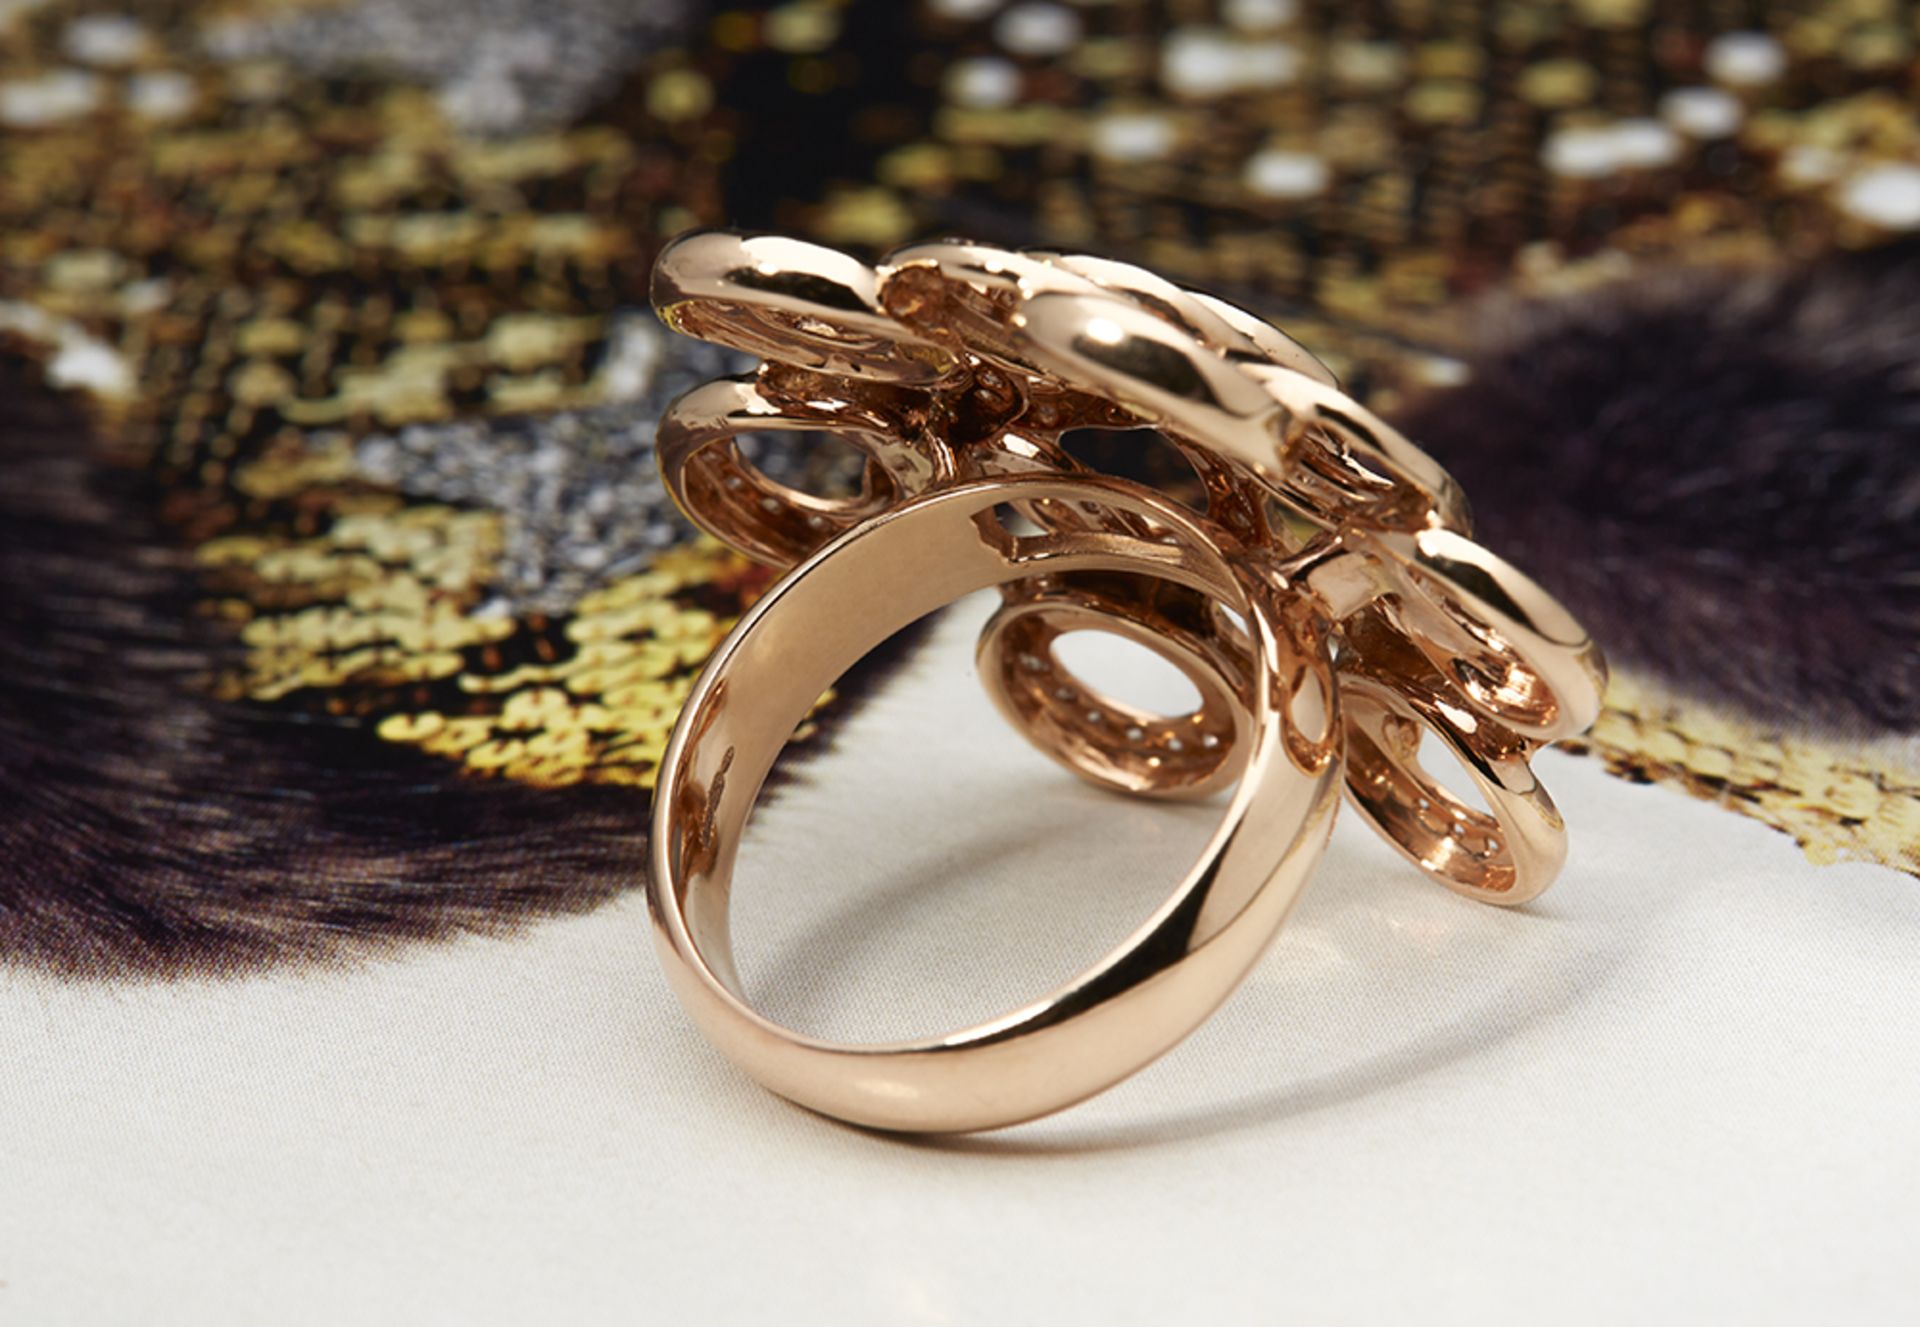 18k Rose Gold 0.73ct Diamond Ring - Image 3 of 5